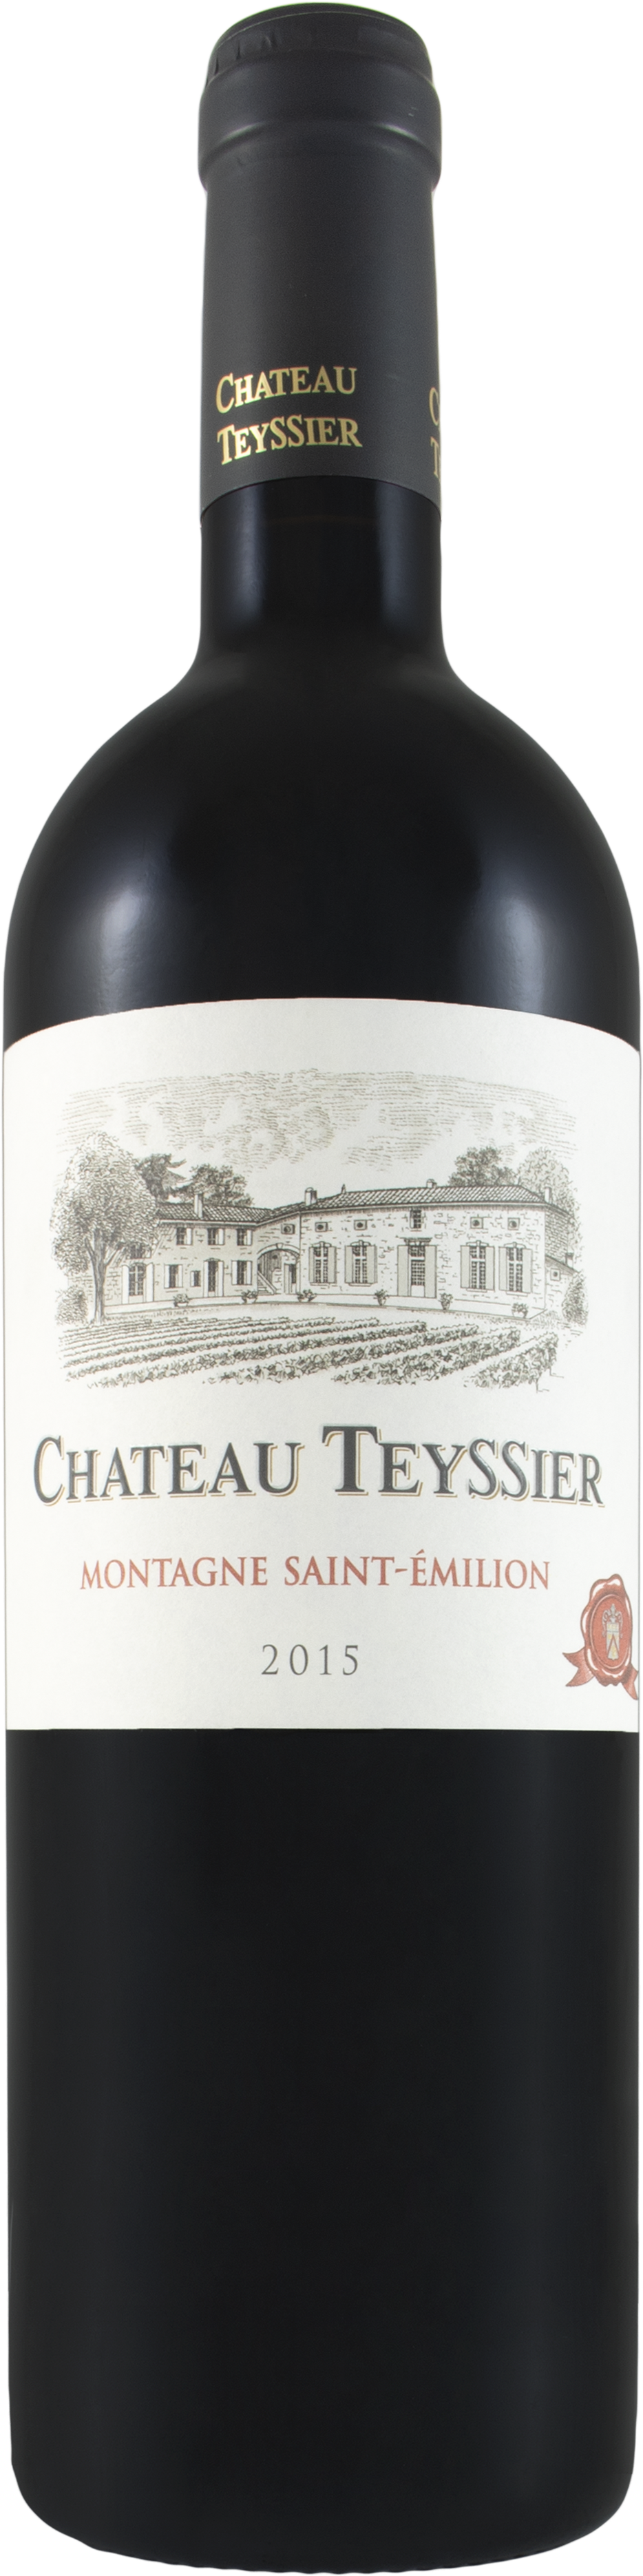 Chateau Teyssier 2019